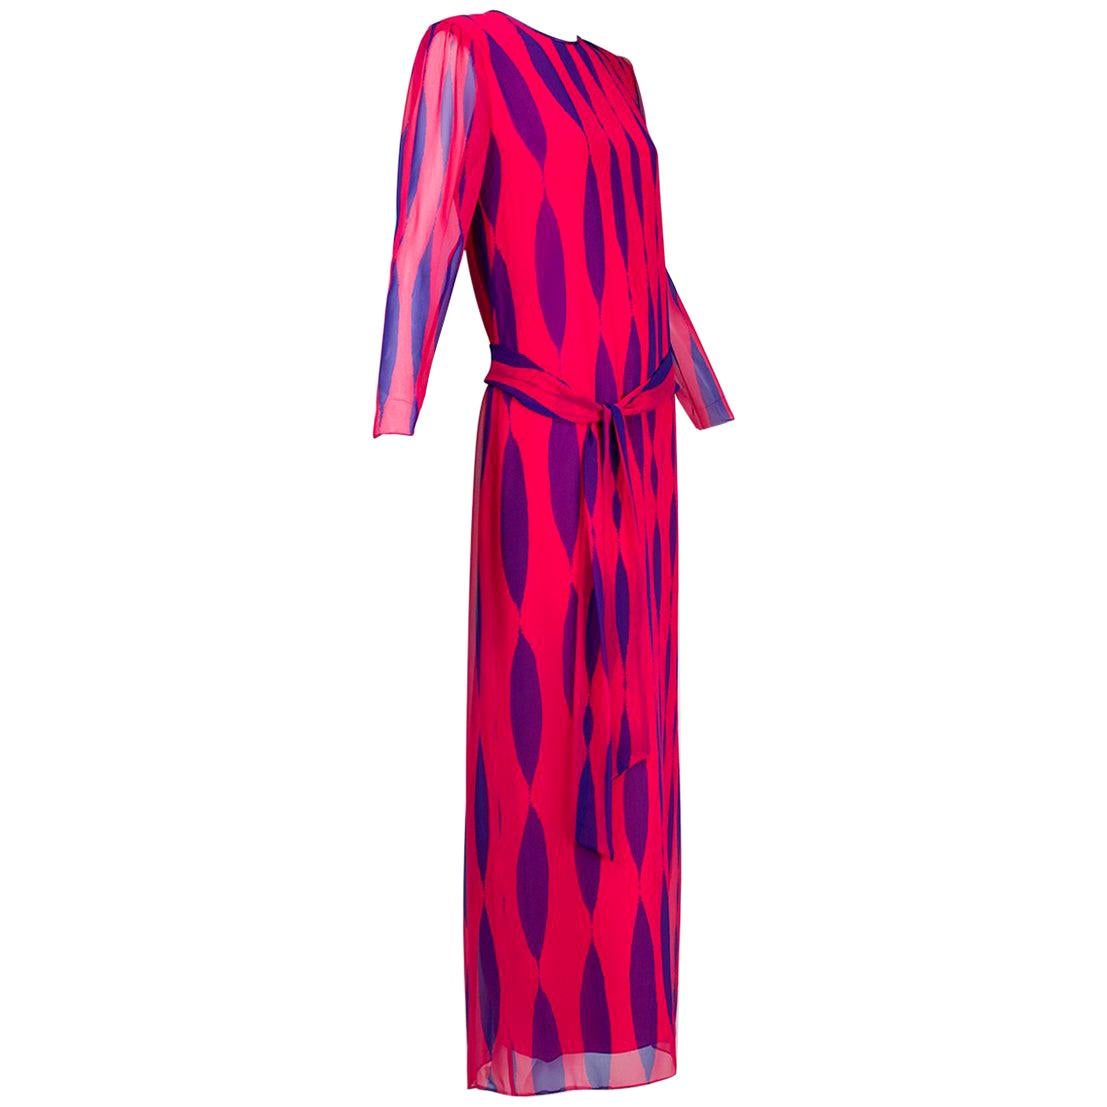 Hanae Mori Fuchsia and Purple Pop Art Column Gown - Medium, 1980s